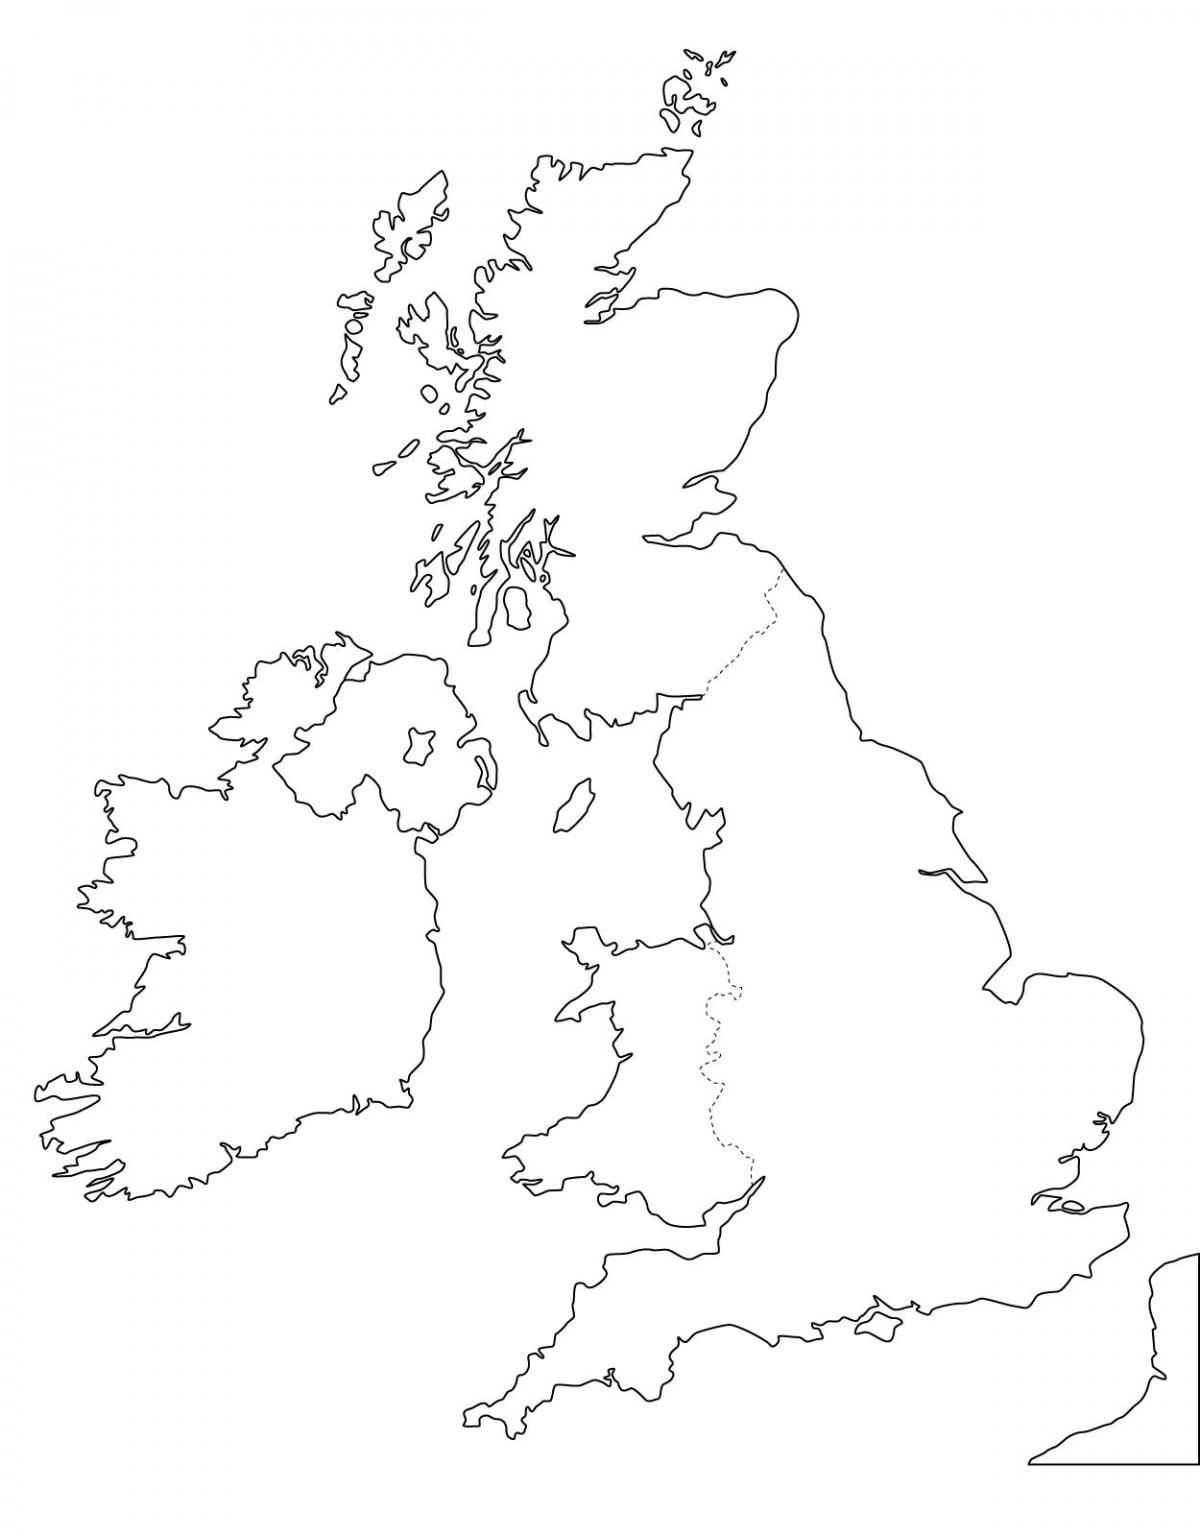 Lege kaart van het Verenigd Koninkrijk (VK)